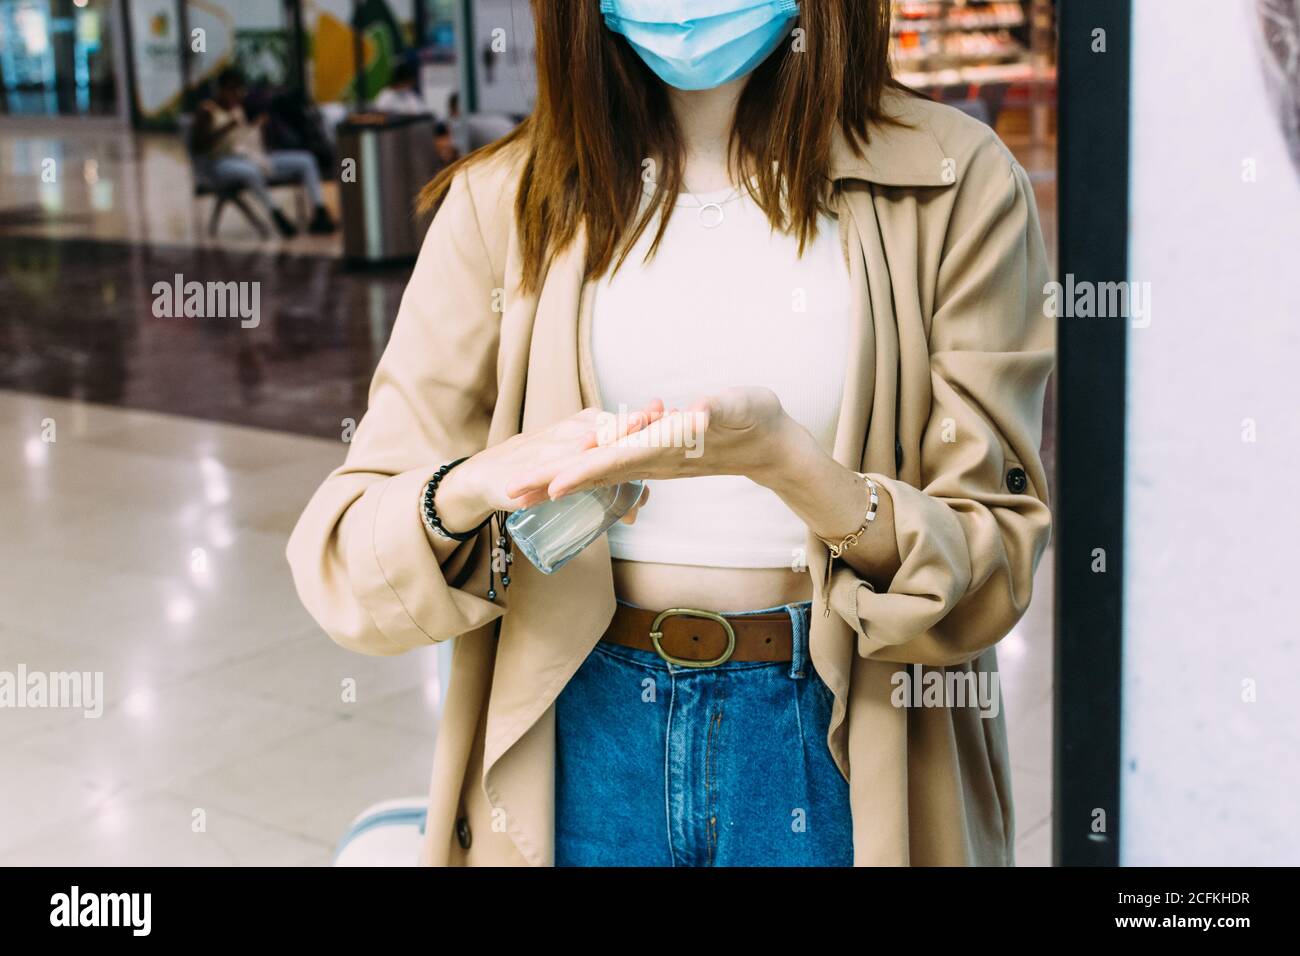 una mujer que lleva una máscara facial y usa gel hidroalcohólico para desinfectar sus manos en la estación de tren Foto de stock